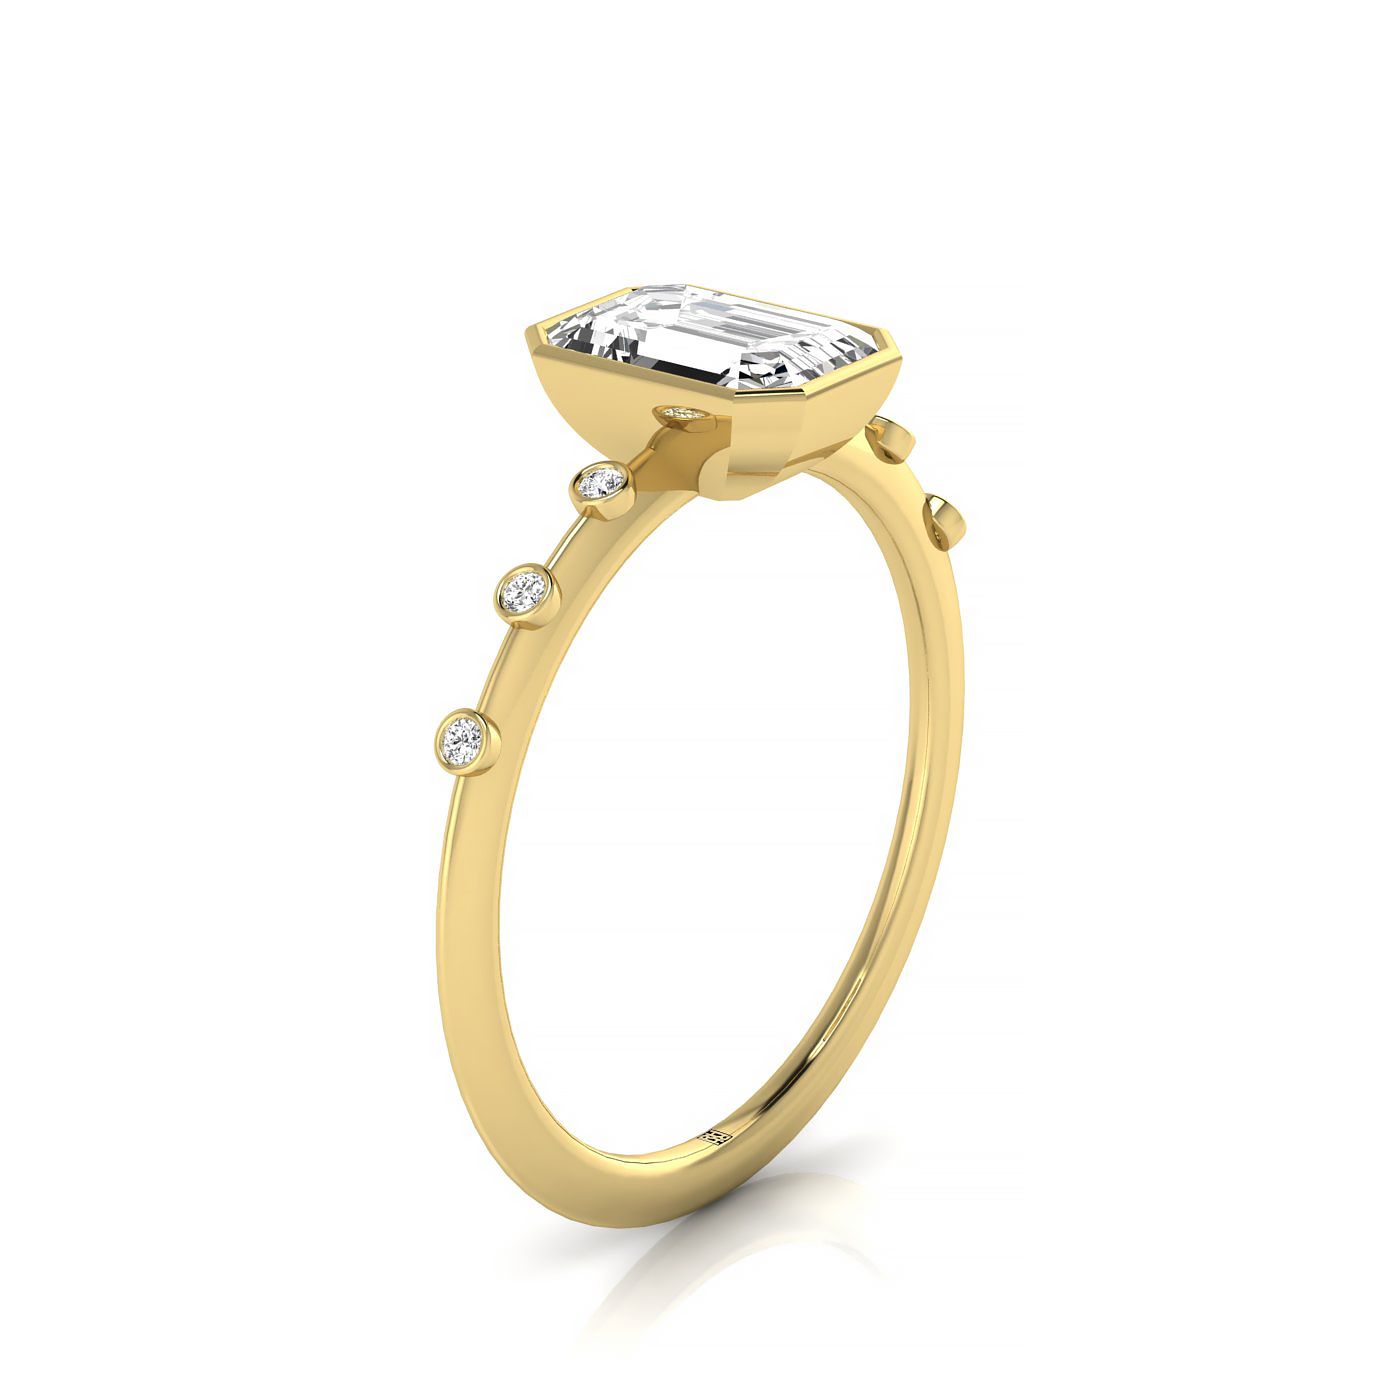 14ky Bezel Set Emerald Engagement Ring With 6 Bezel Set Round Diamonds On Shank